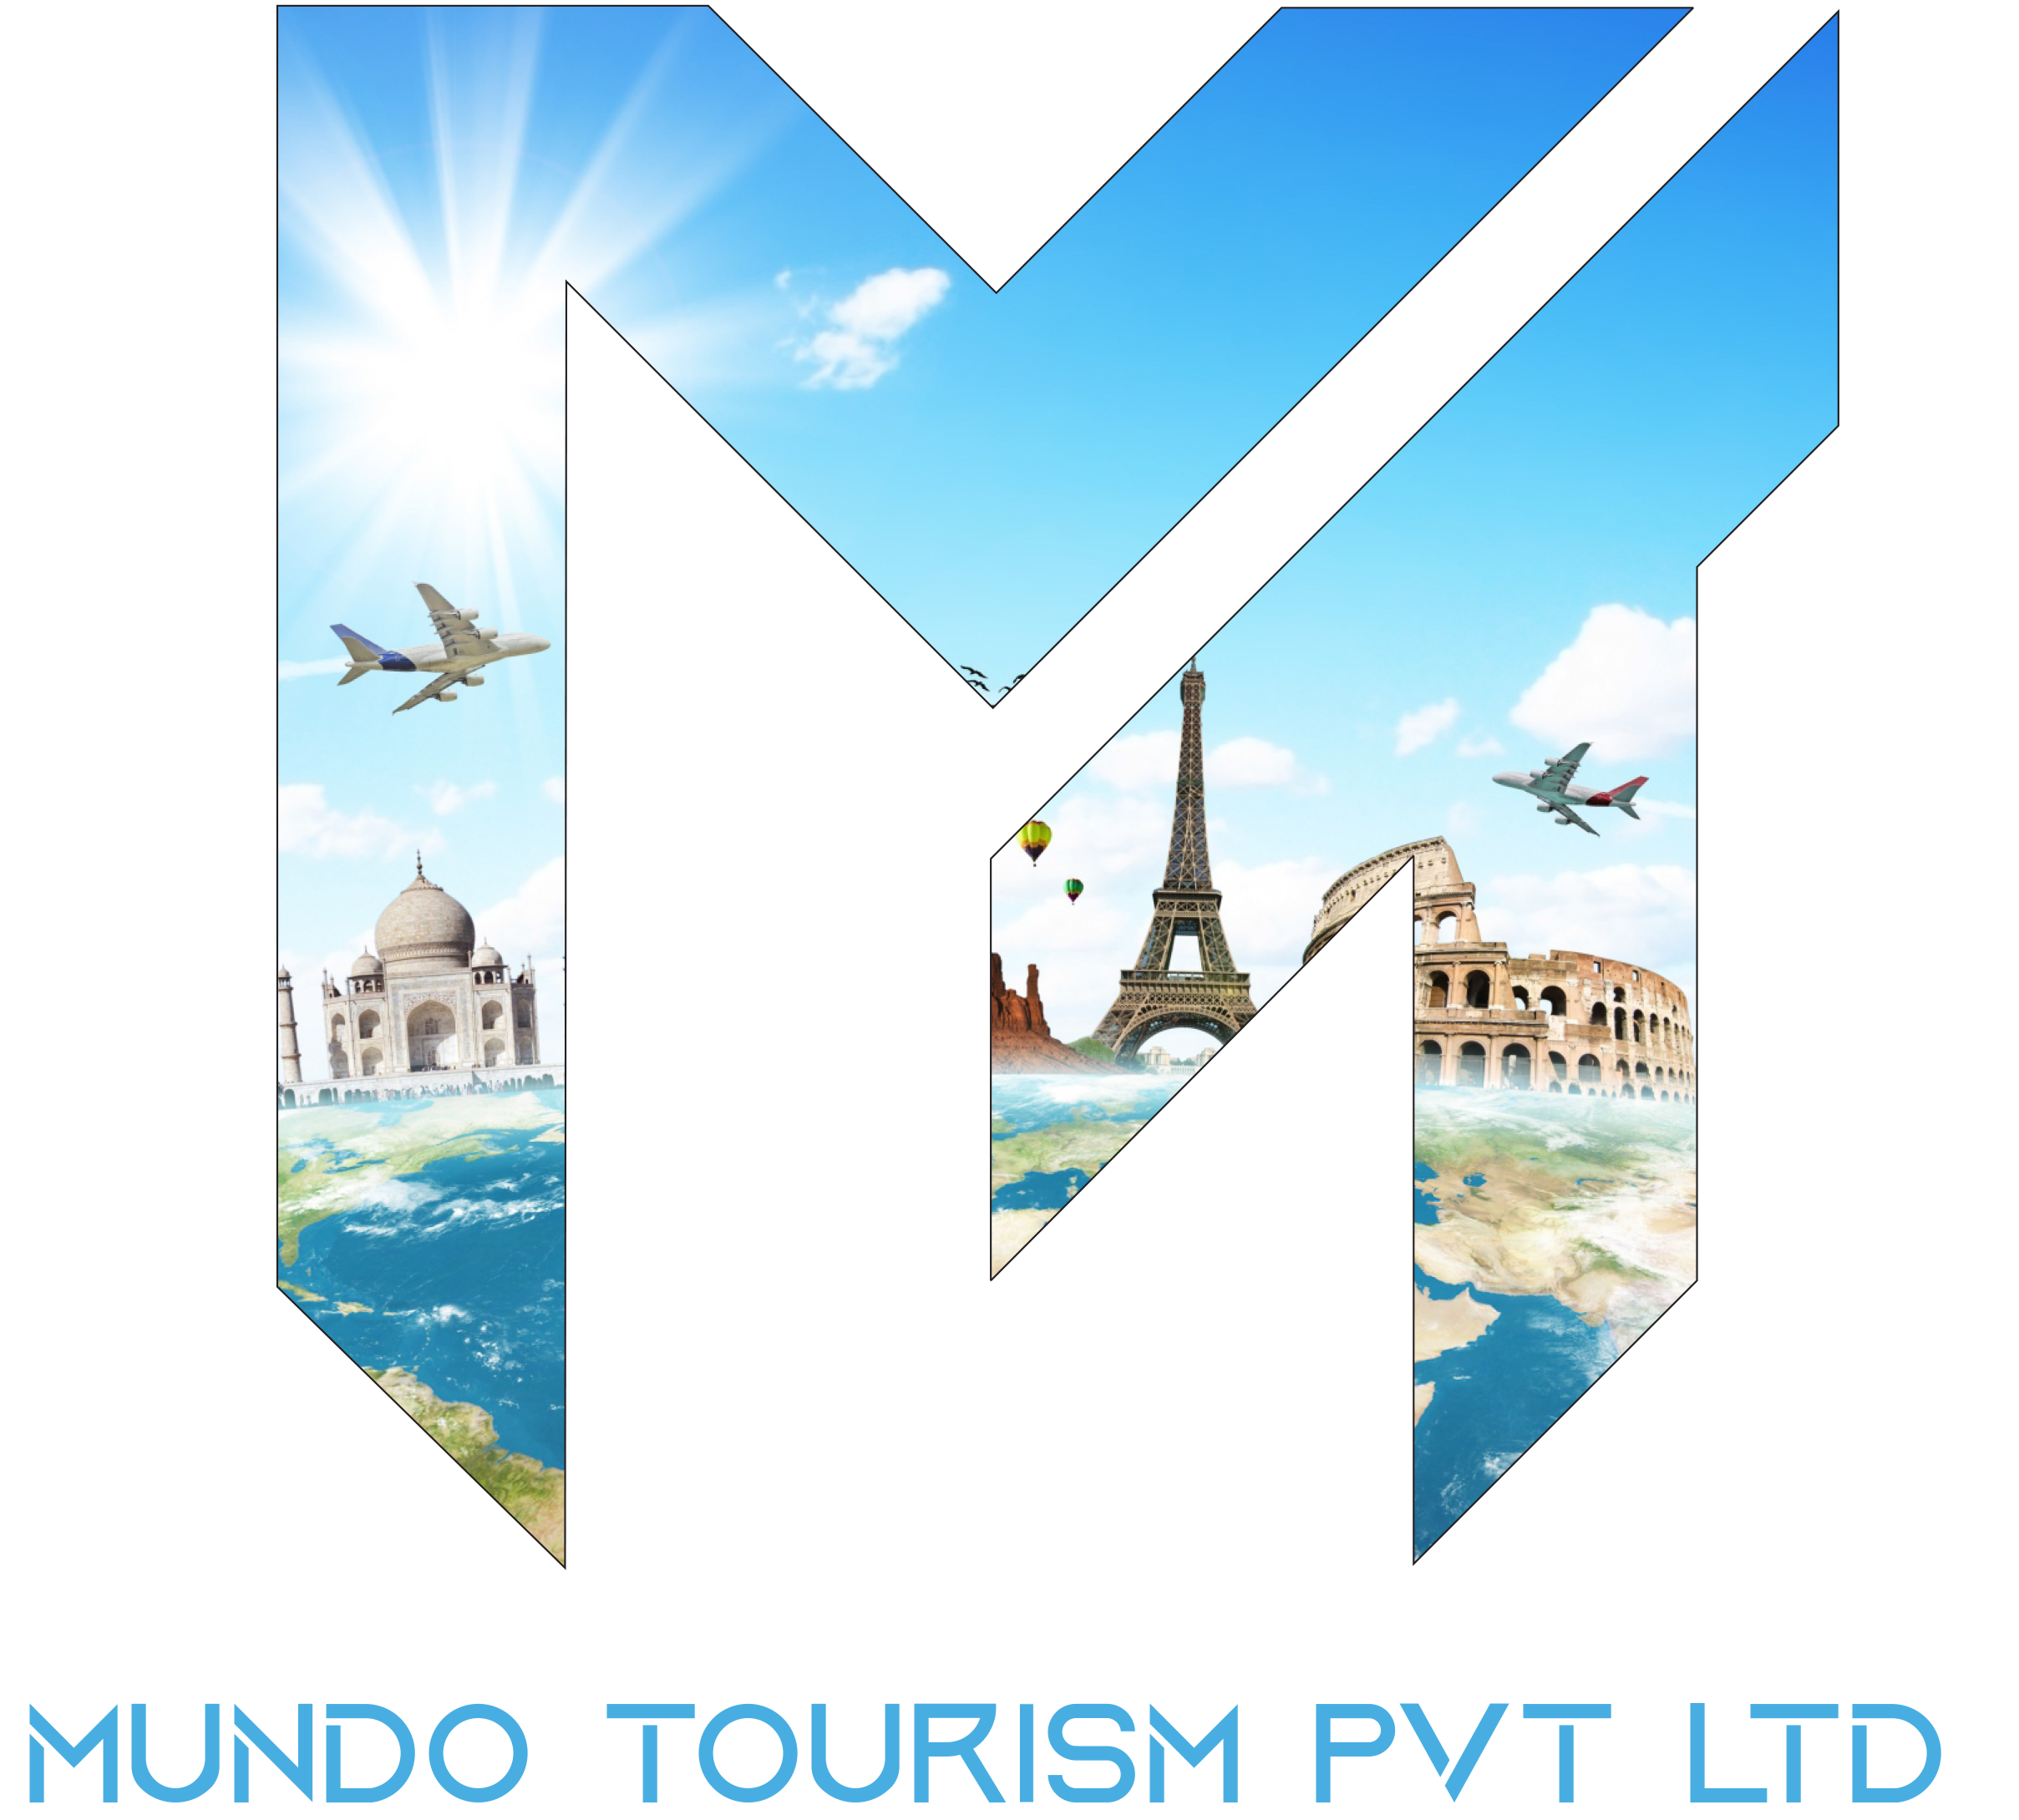 Mundo Tourism Pvt Ltd